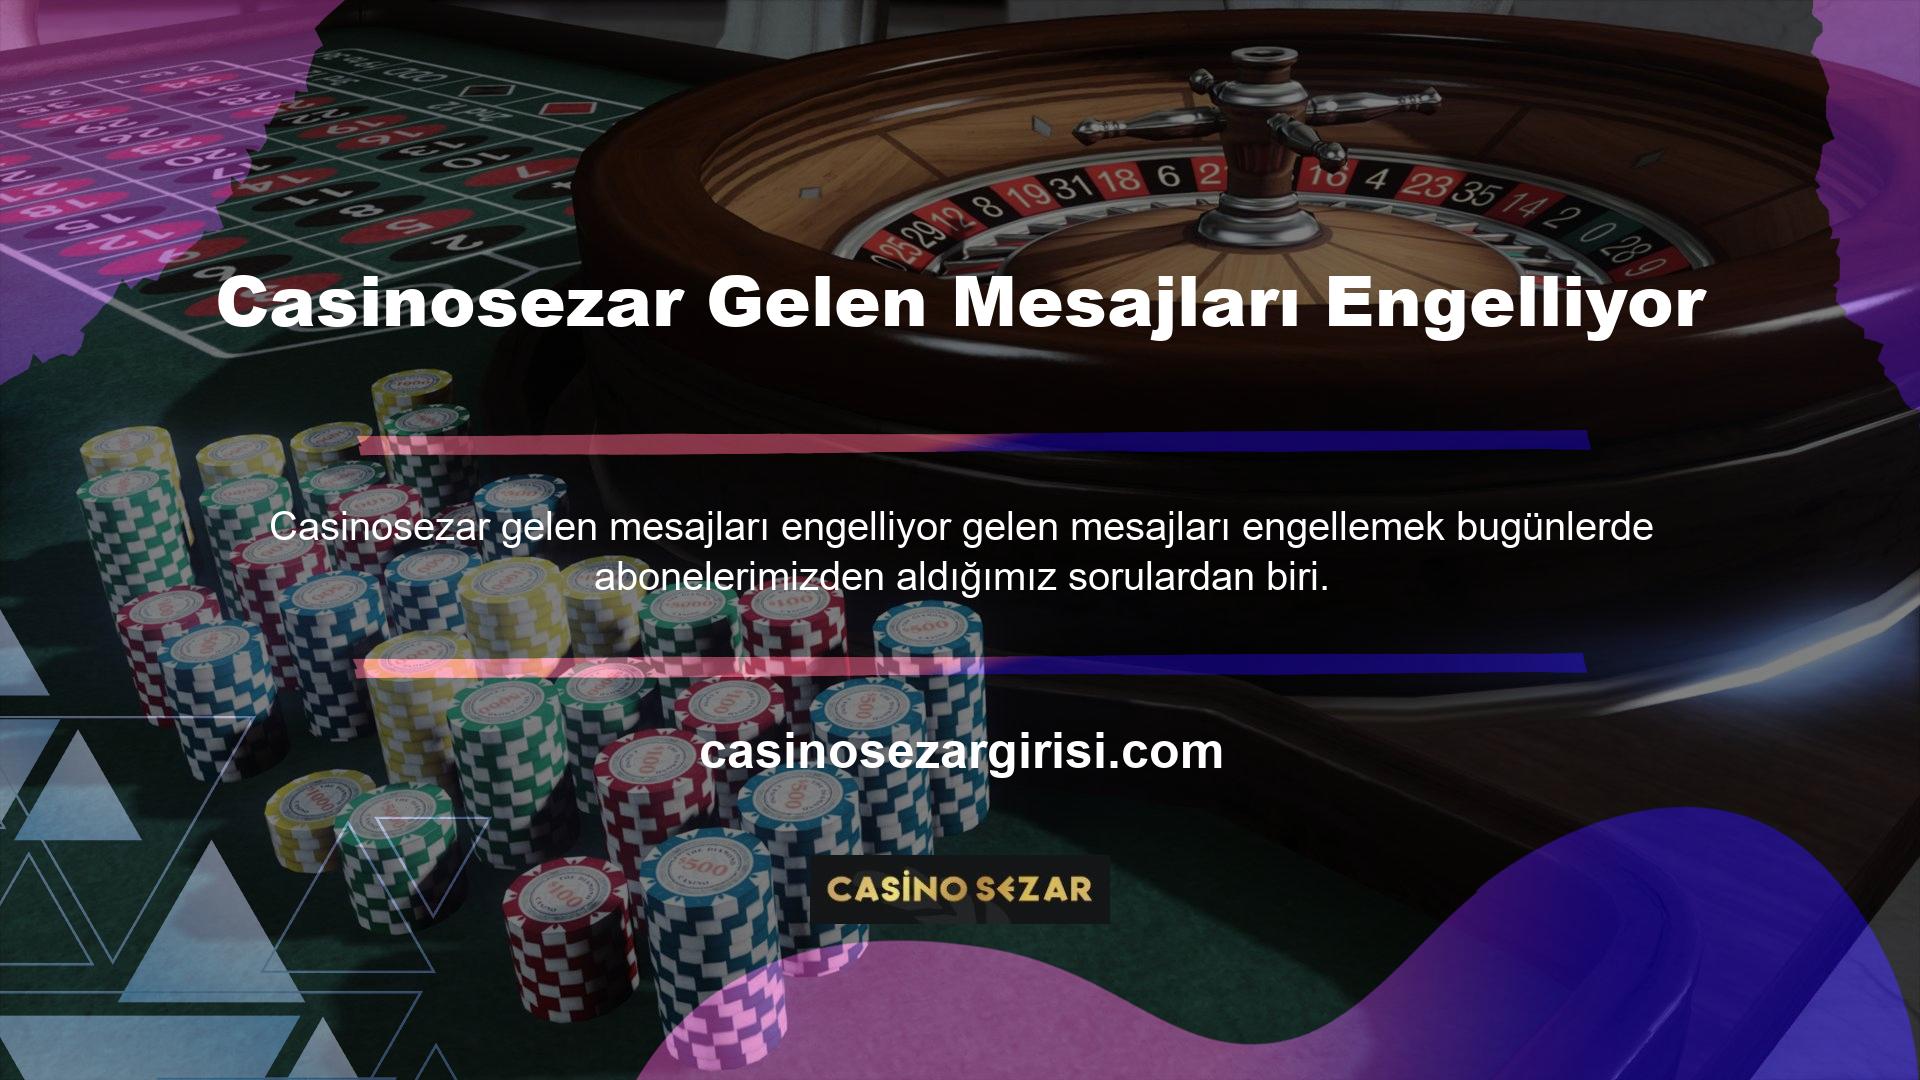 Casinosezar, yasa dışı casino siteleriyle yapılan lisans ve sertifika anlaşmalarının en büyük ve en karlı alanlarından biridir